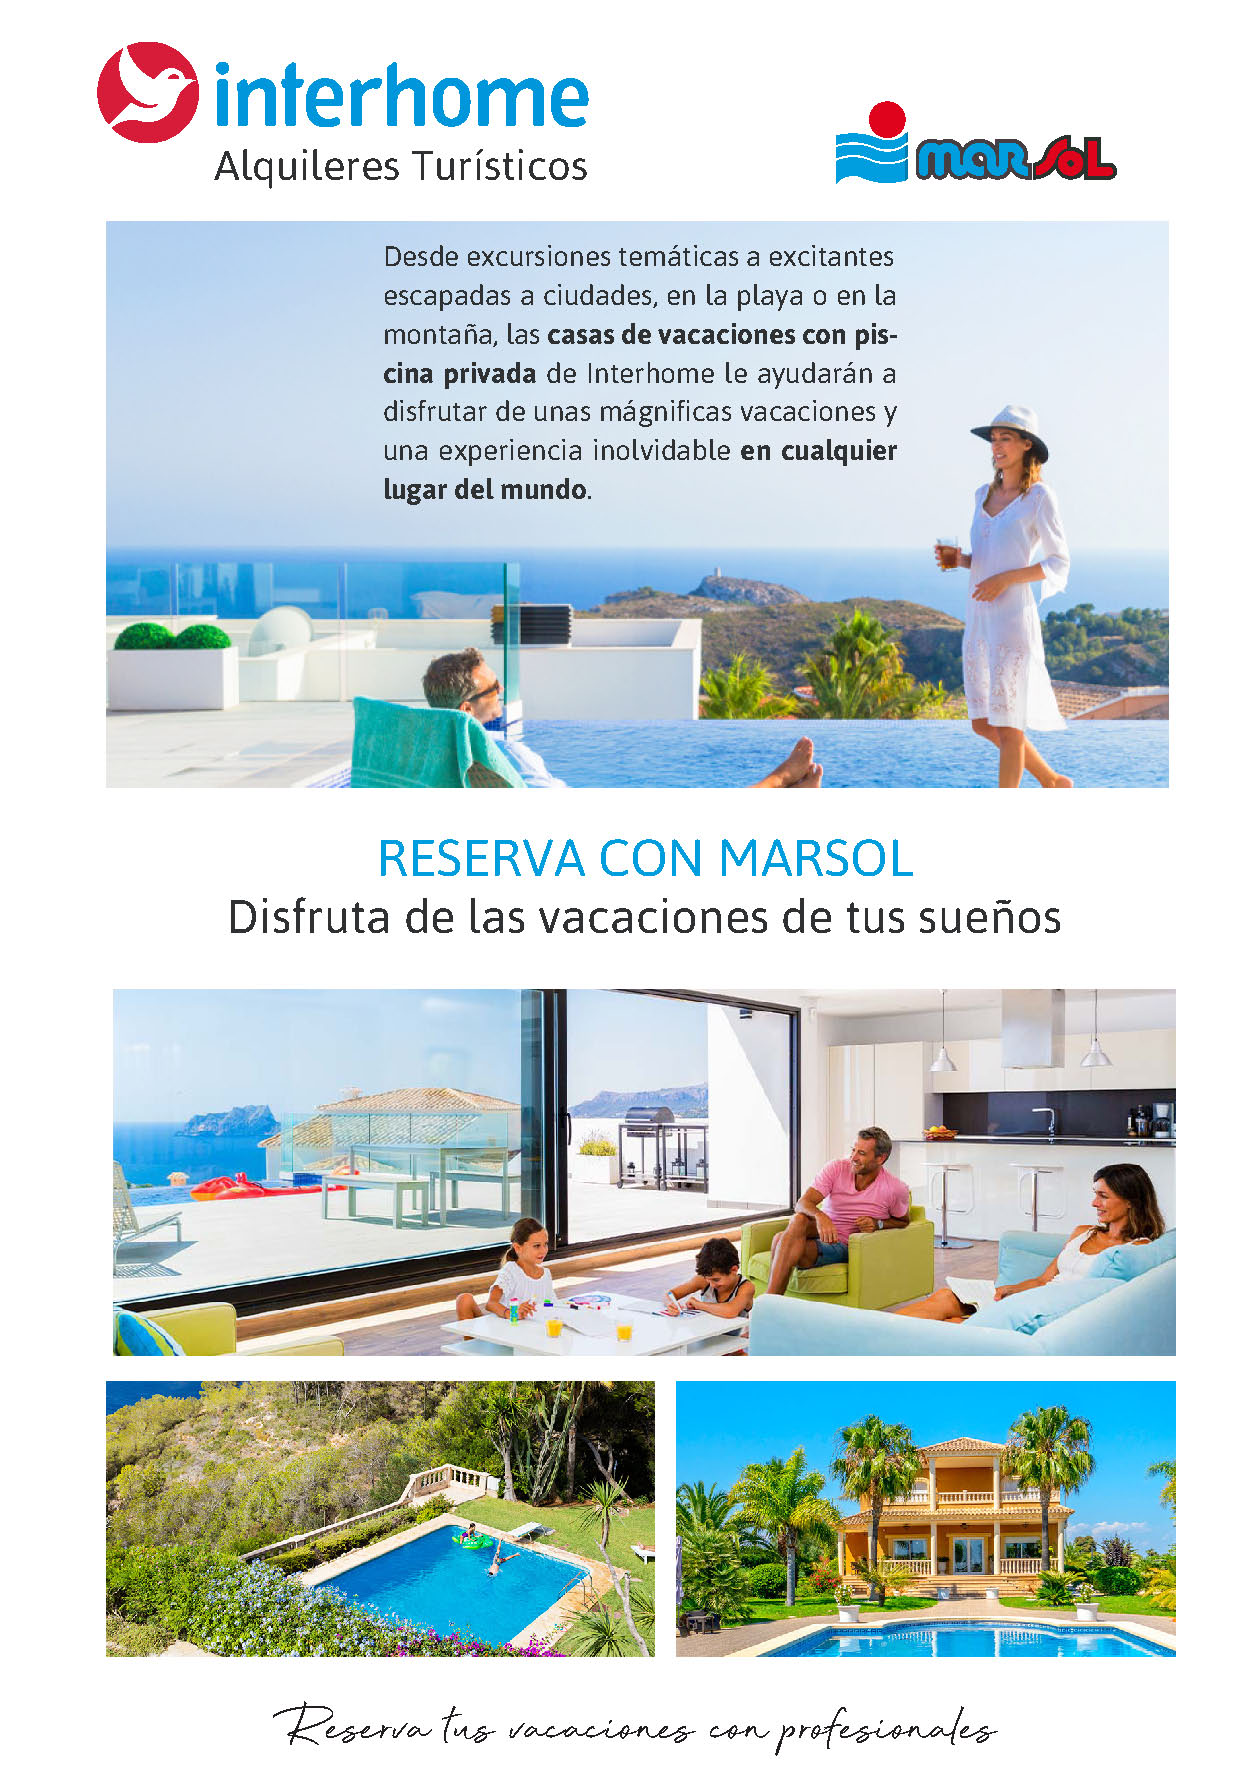 Oferta Marsol Alquileres Turisticos Casas de vacaciones con piscina privada Interhome 2022